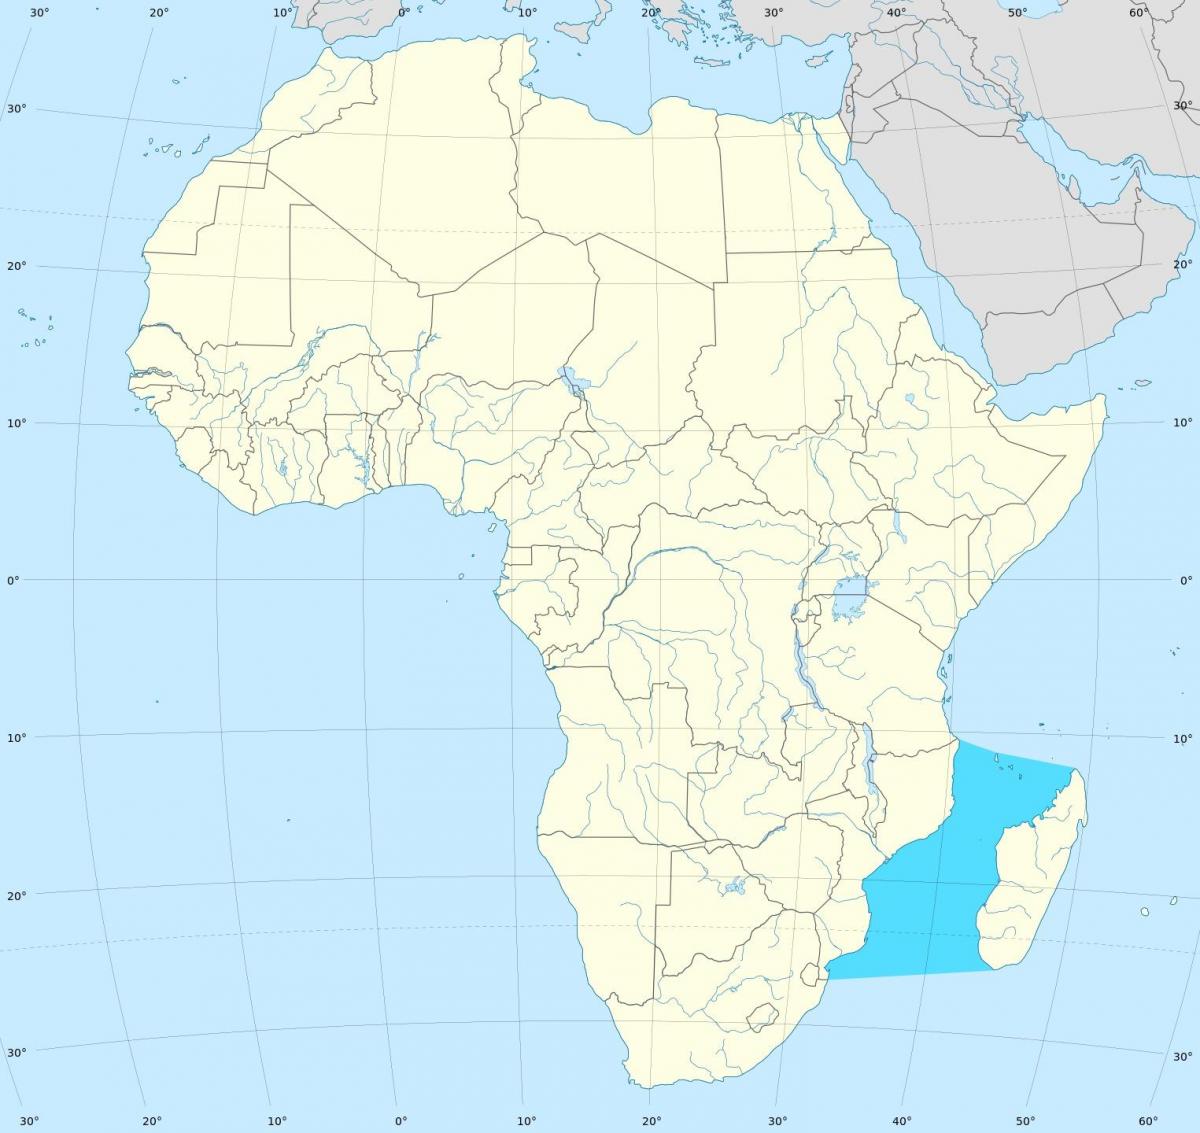 Mozambik kanál afrika mapa